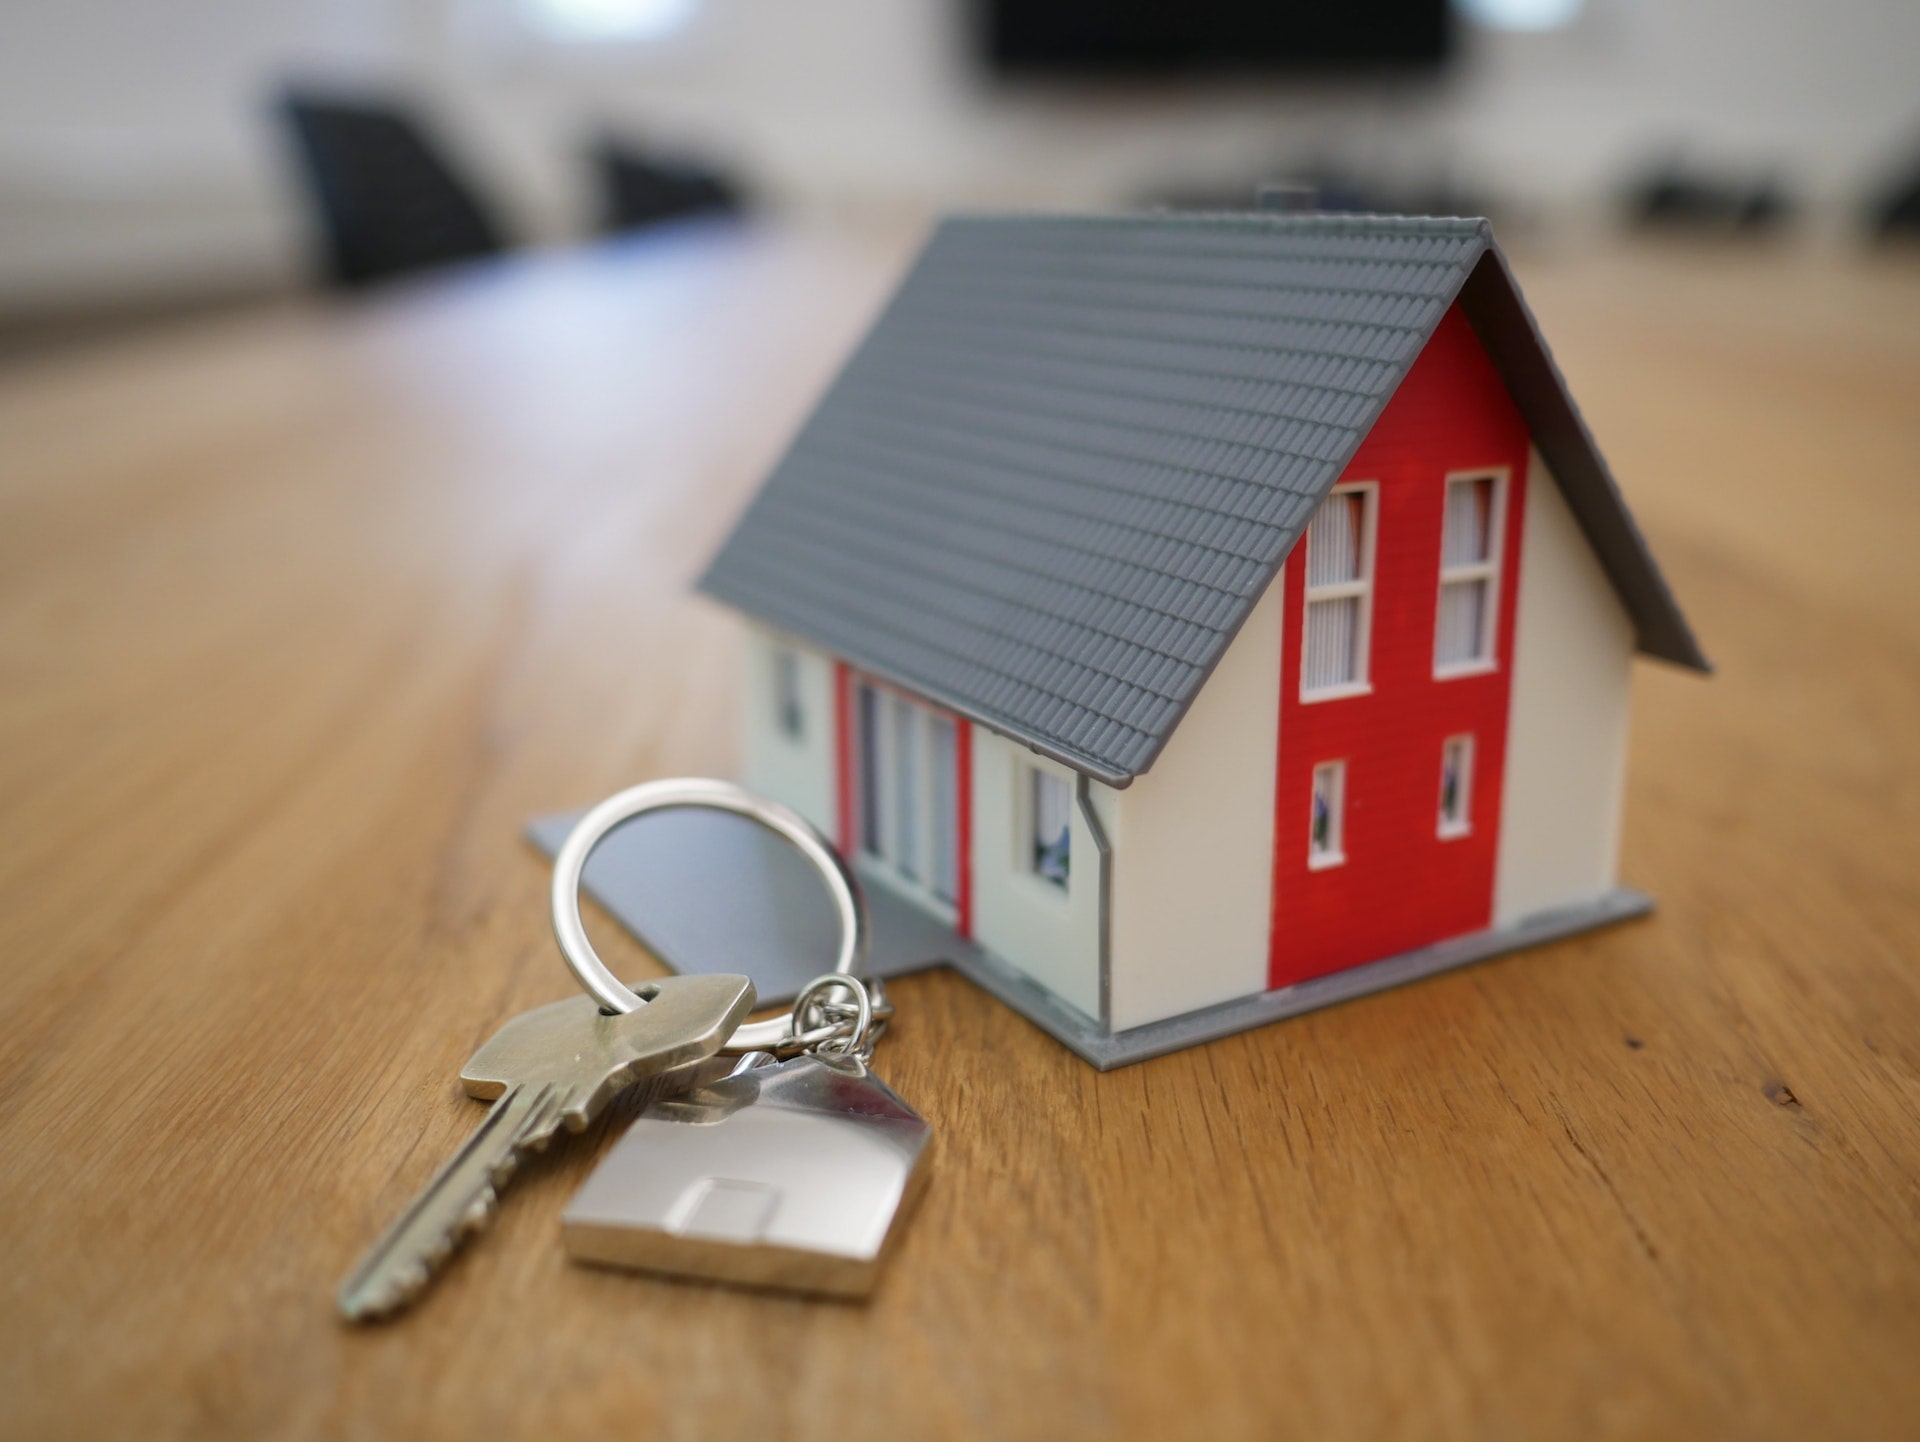 Keys beside small plastic house